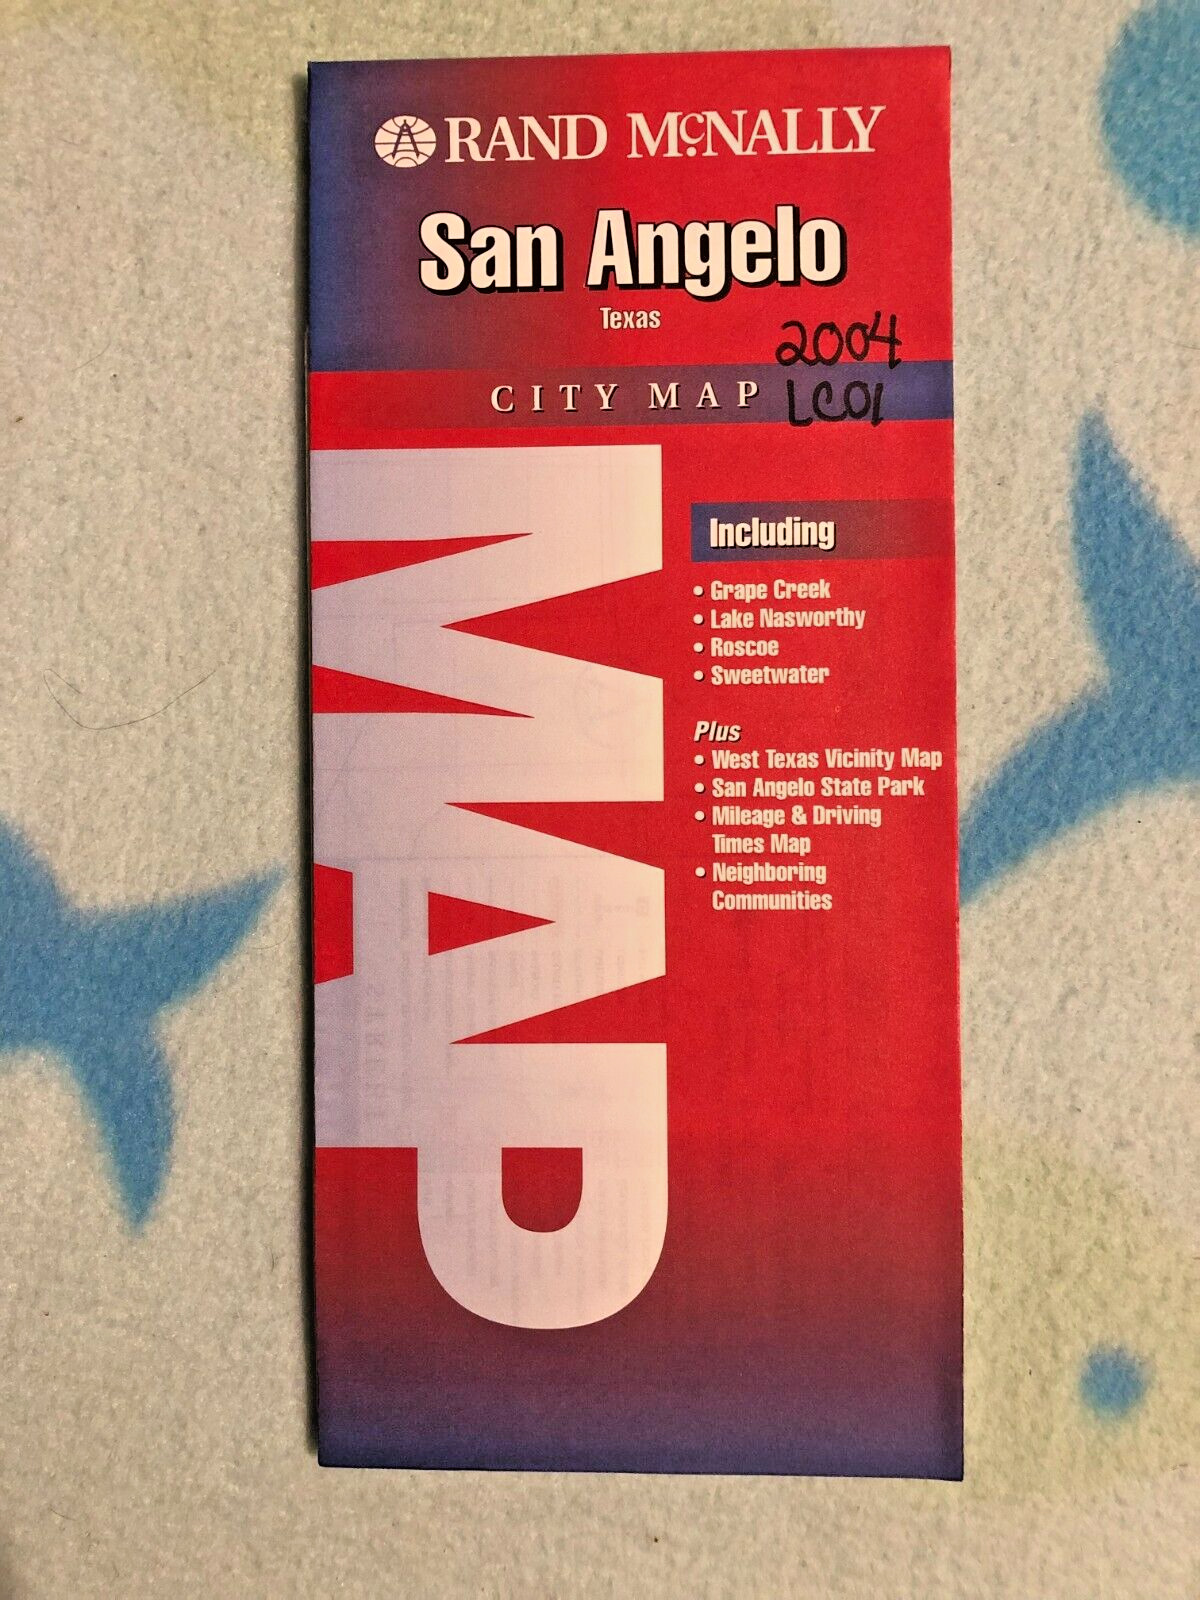 895 - San Angelo Texas City Map - 2004 - Rand Mcnally